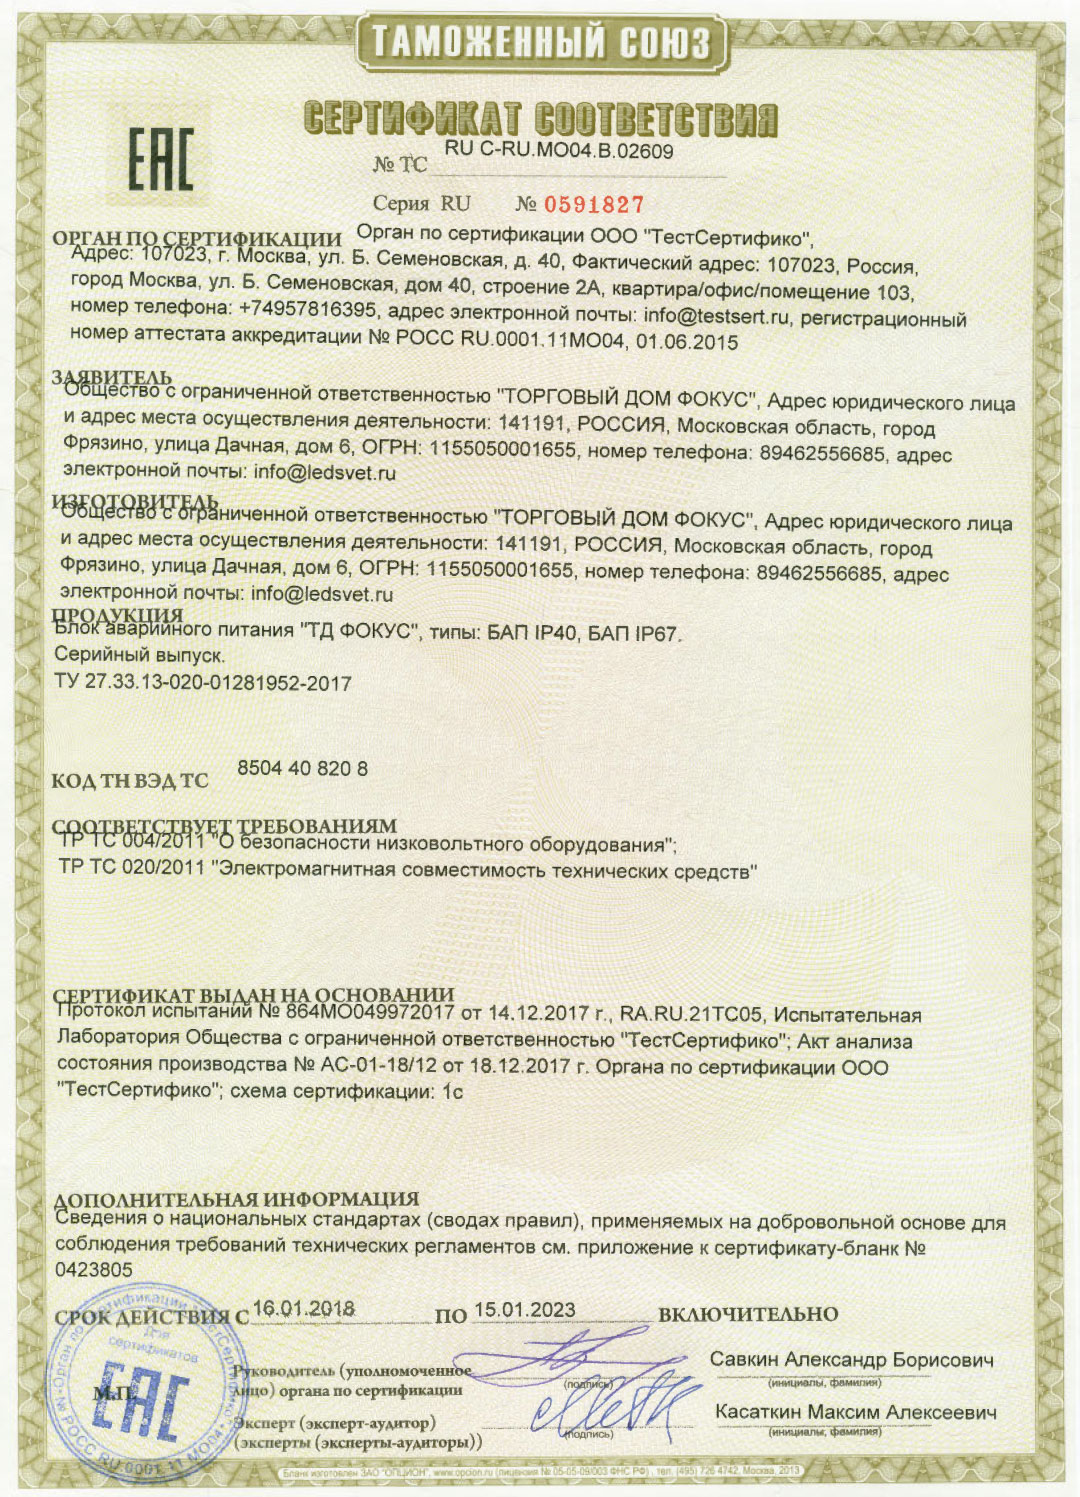 Сертификат соответствия Таможенного союза на БАП